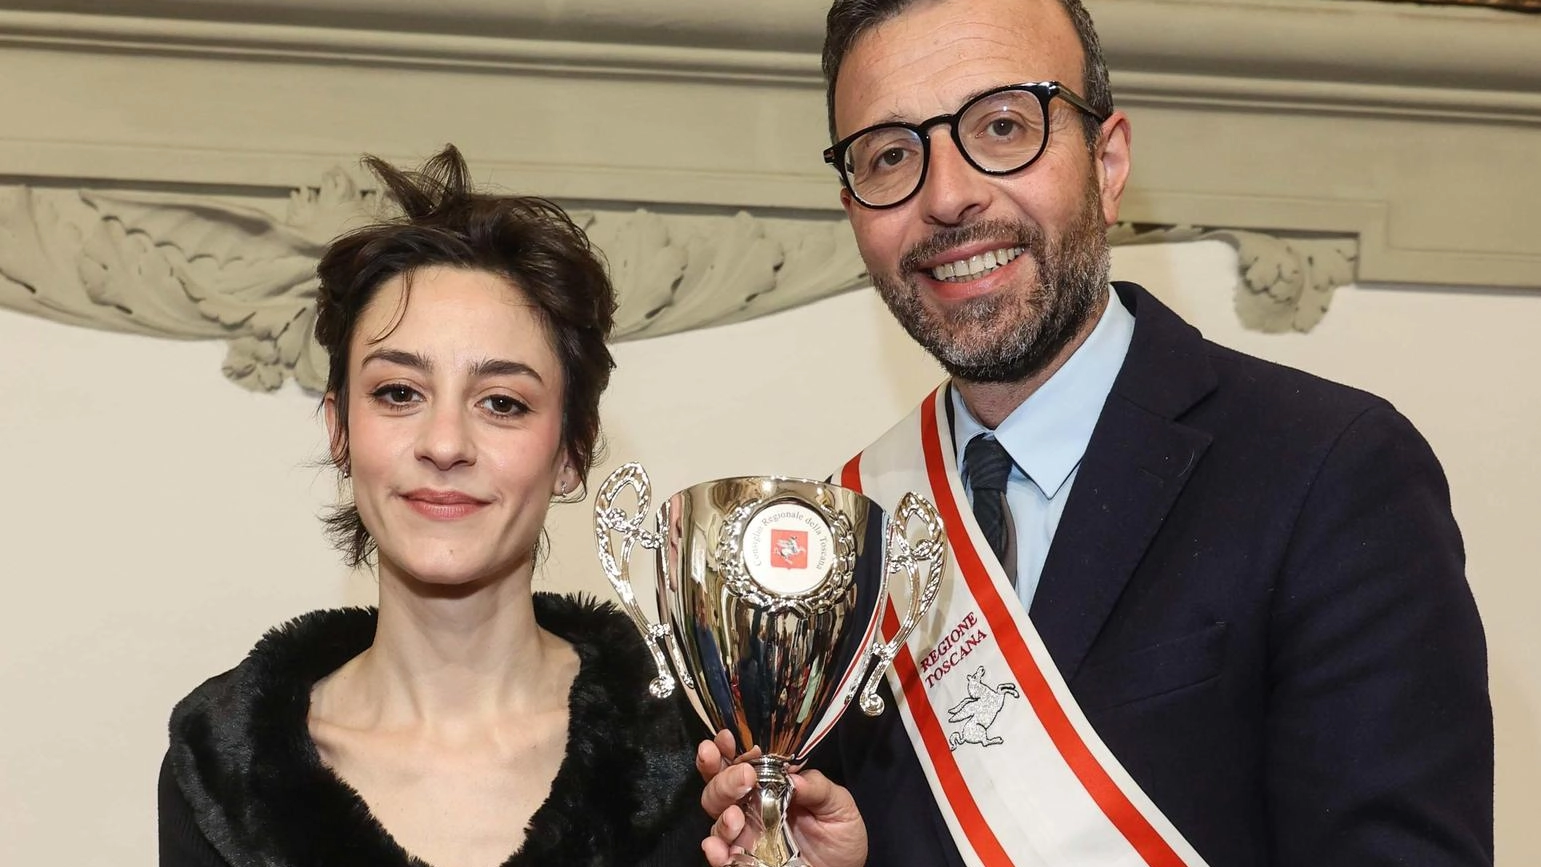 Eleonora Riso, vincitrice di Masterchef Italia, ricevuta dal presidente del Consiglio Regionale per il suo talento culinario unico. Progetti futuri di un ristorante che unisca tradizione e creatività.